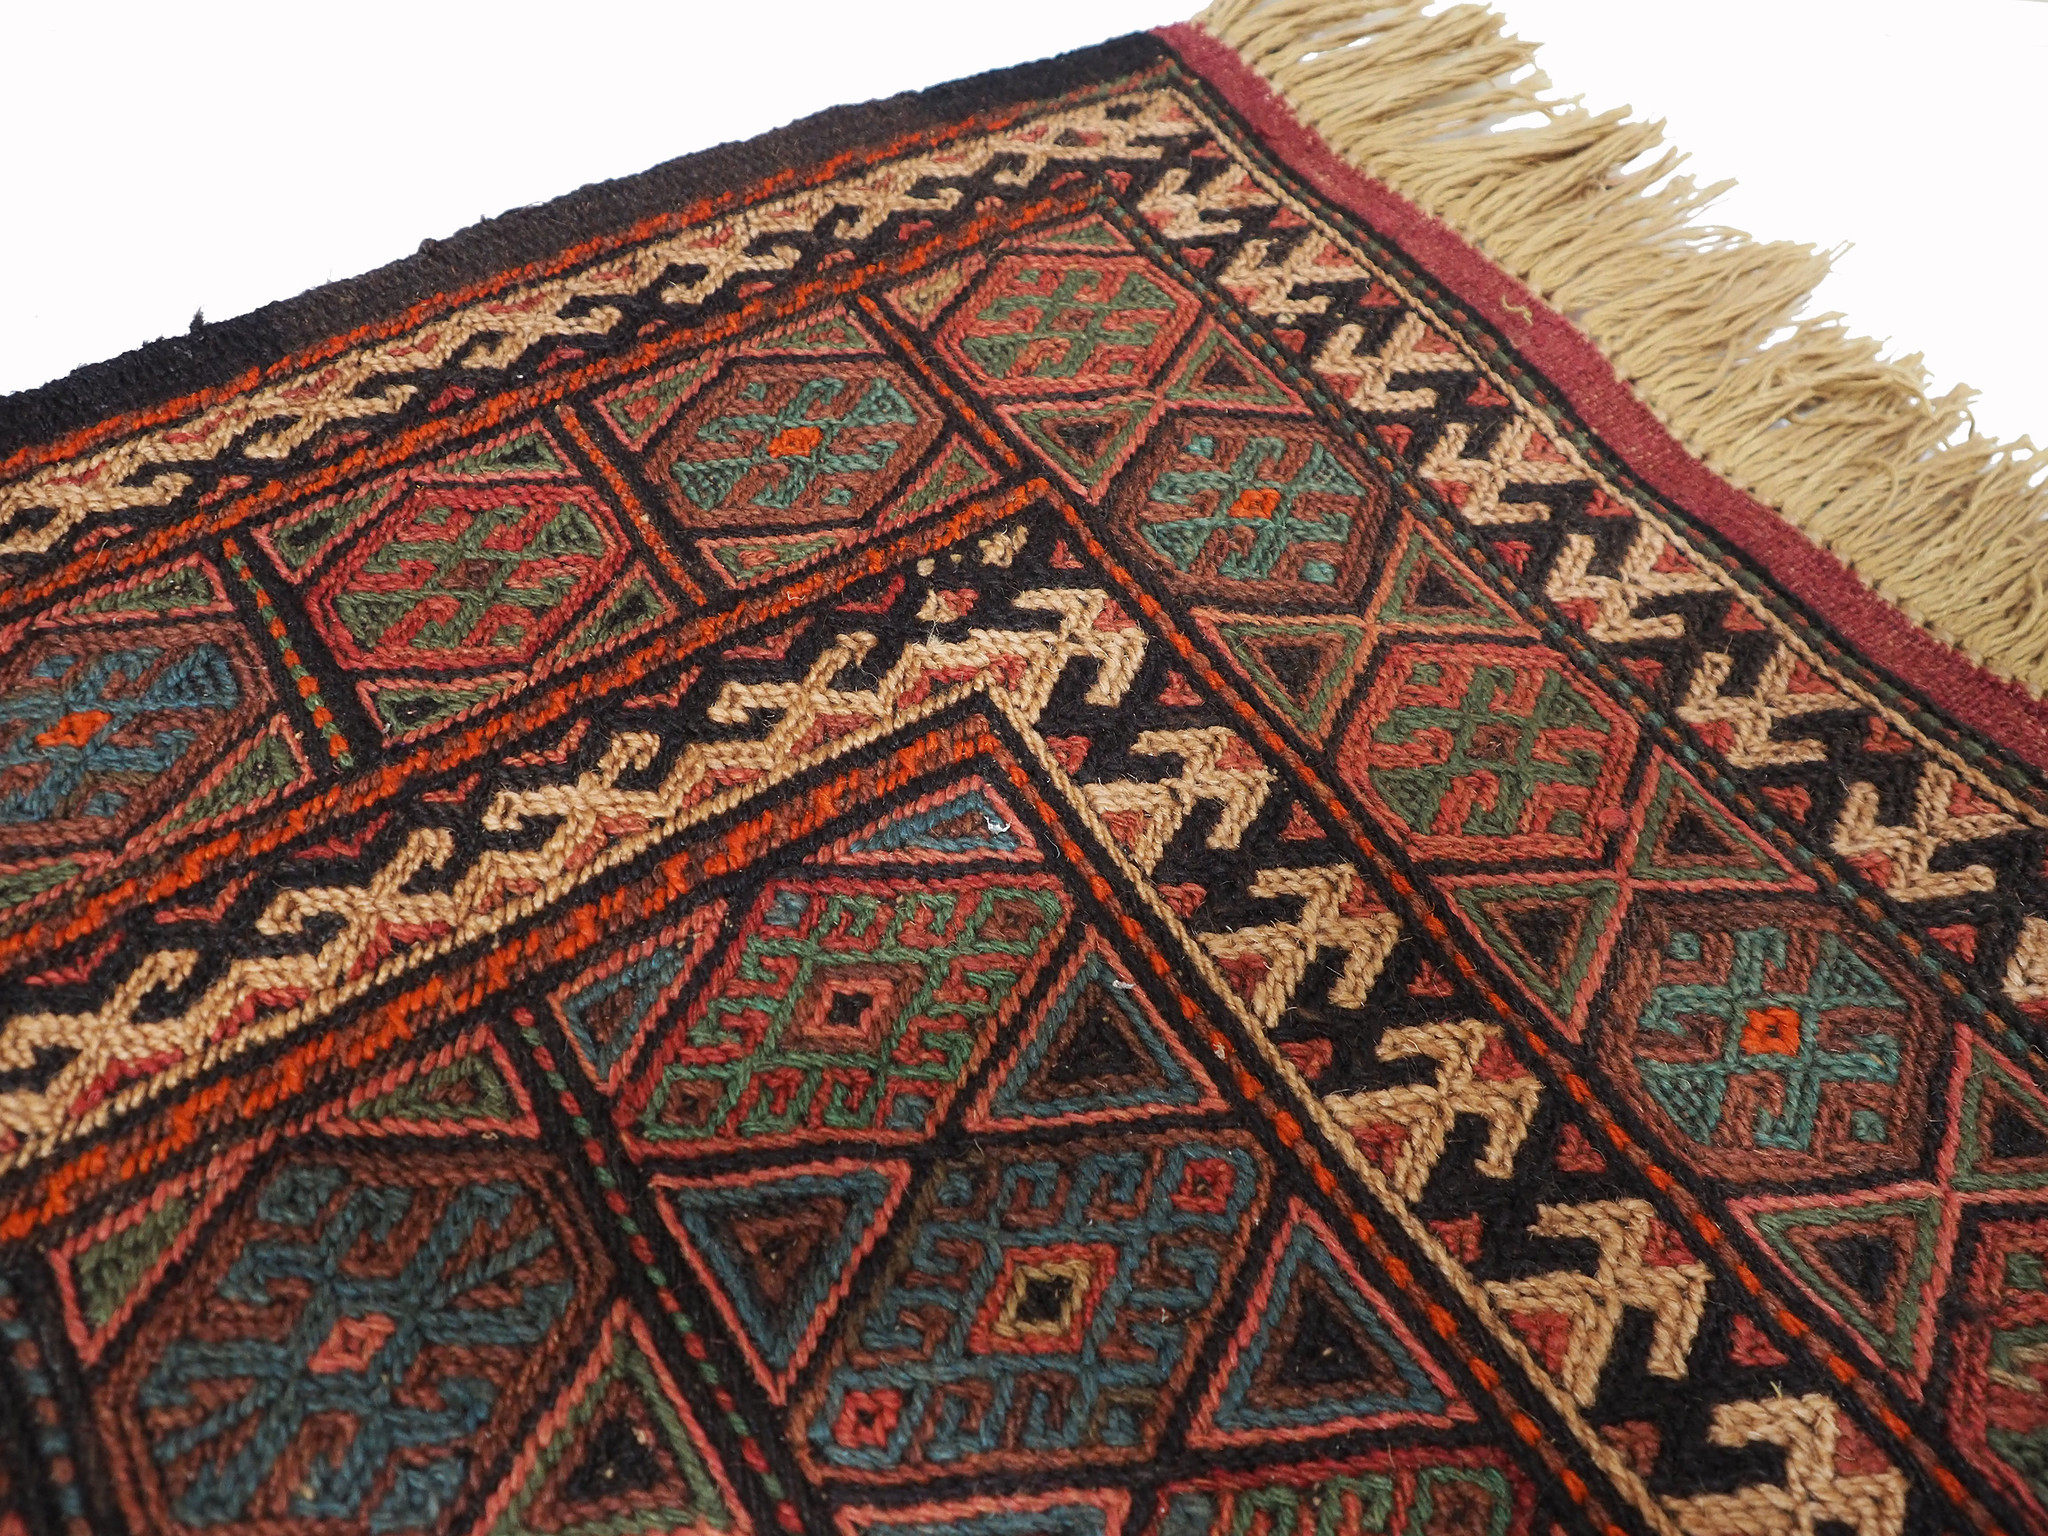 290x145 cm orient handgewebte Teppich Nomaden belotsch sumakh kelim Beloch kilim Nr-364